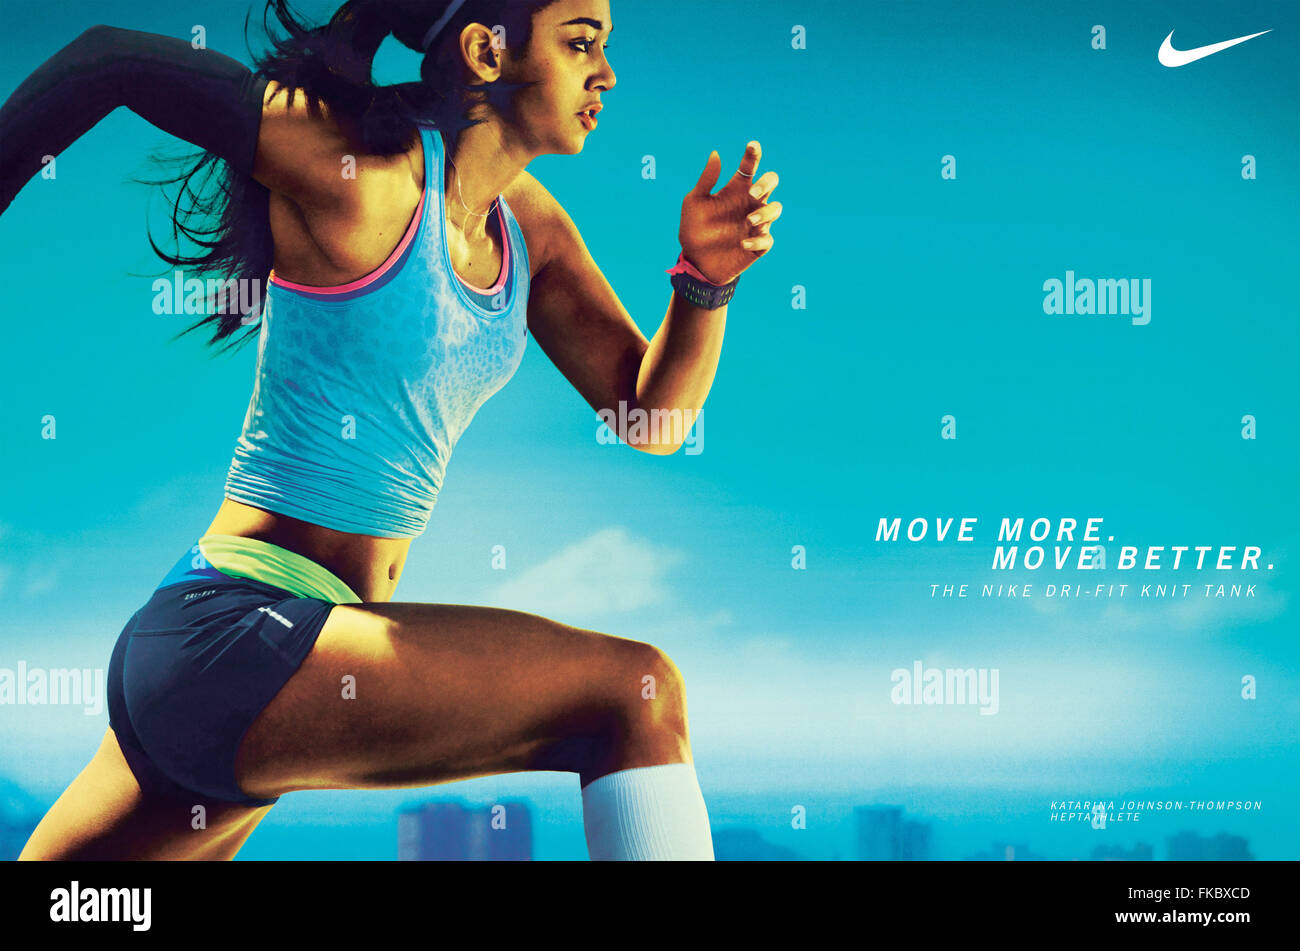 I reklama. Реклама найк. Реклама спорта. Рекламные плакаты Nike. Спортивная реклама.